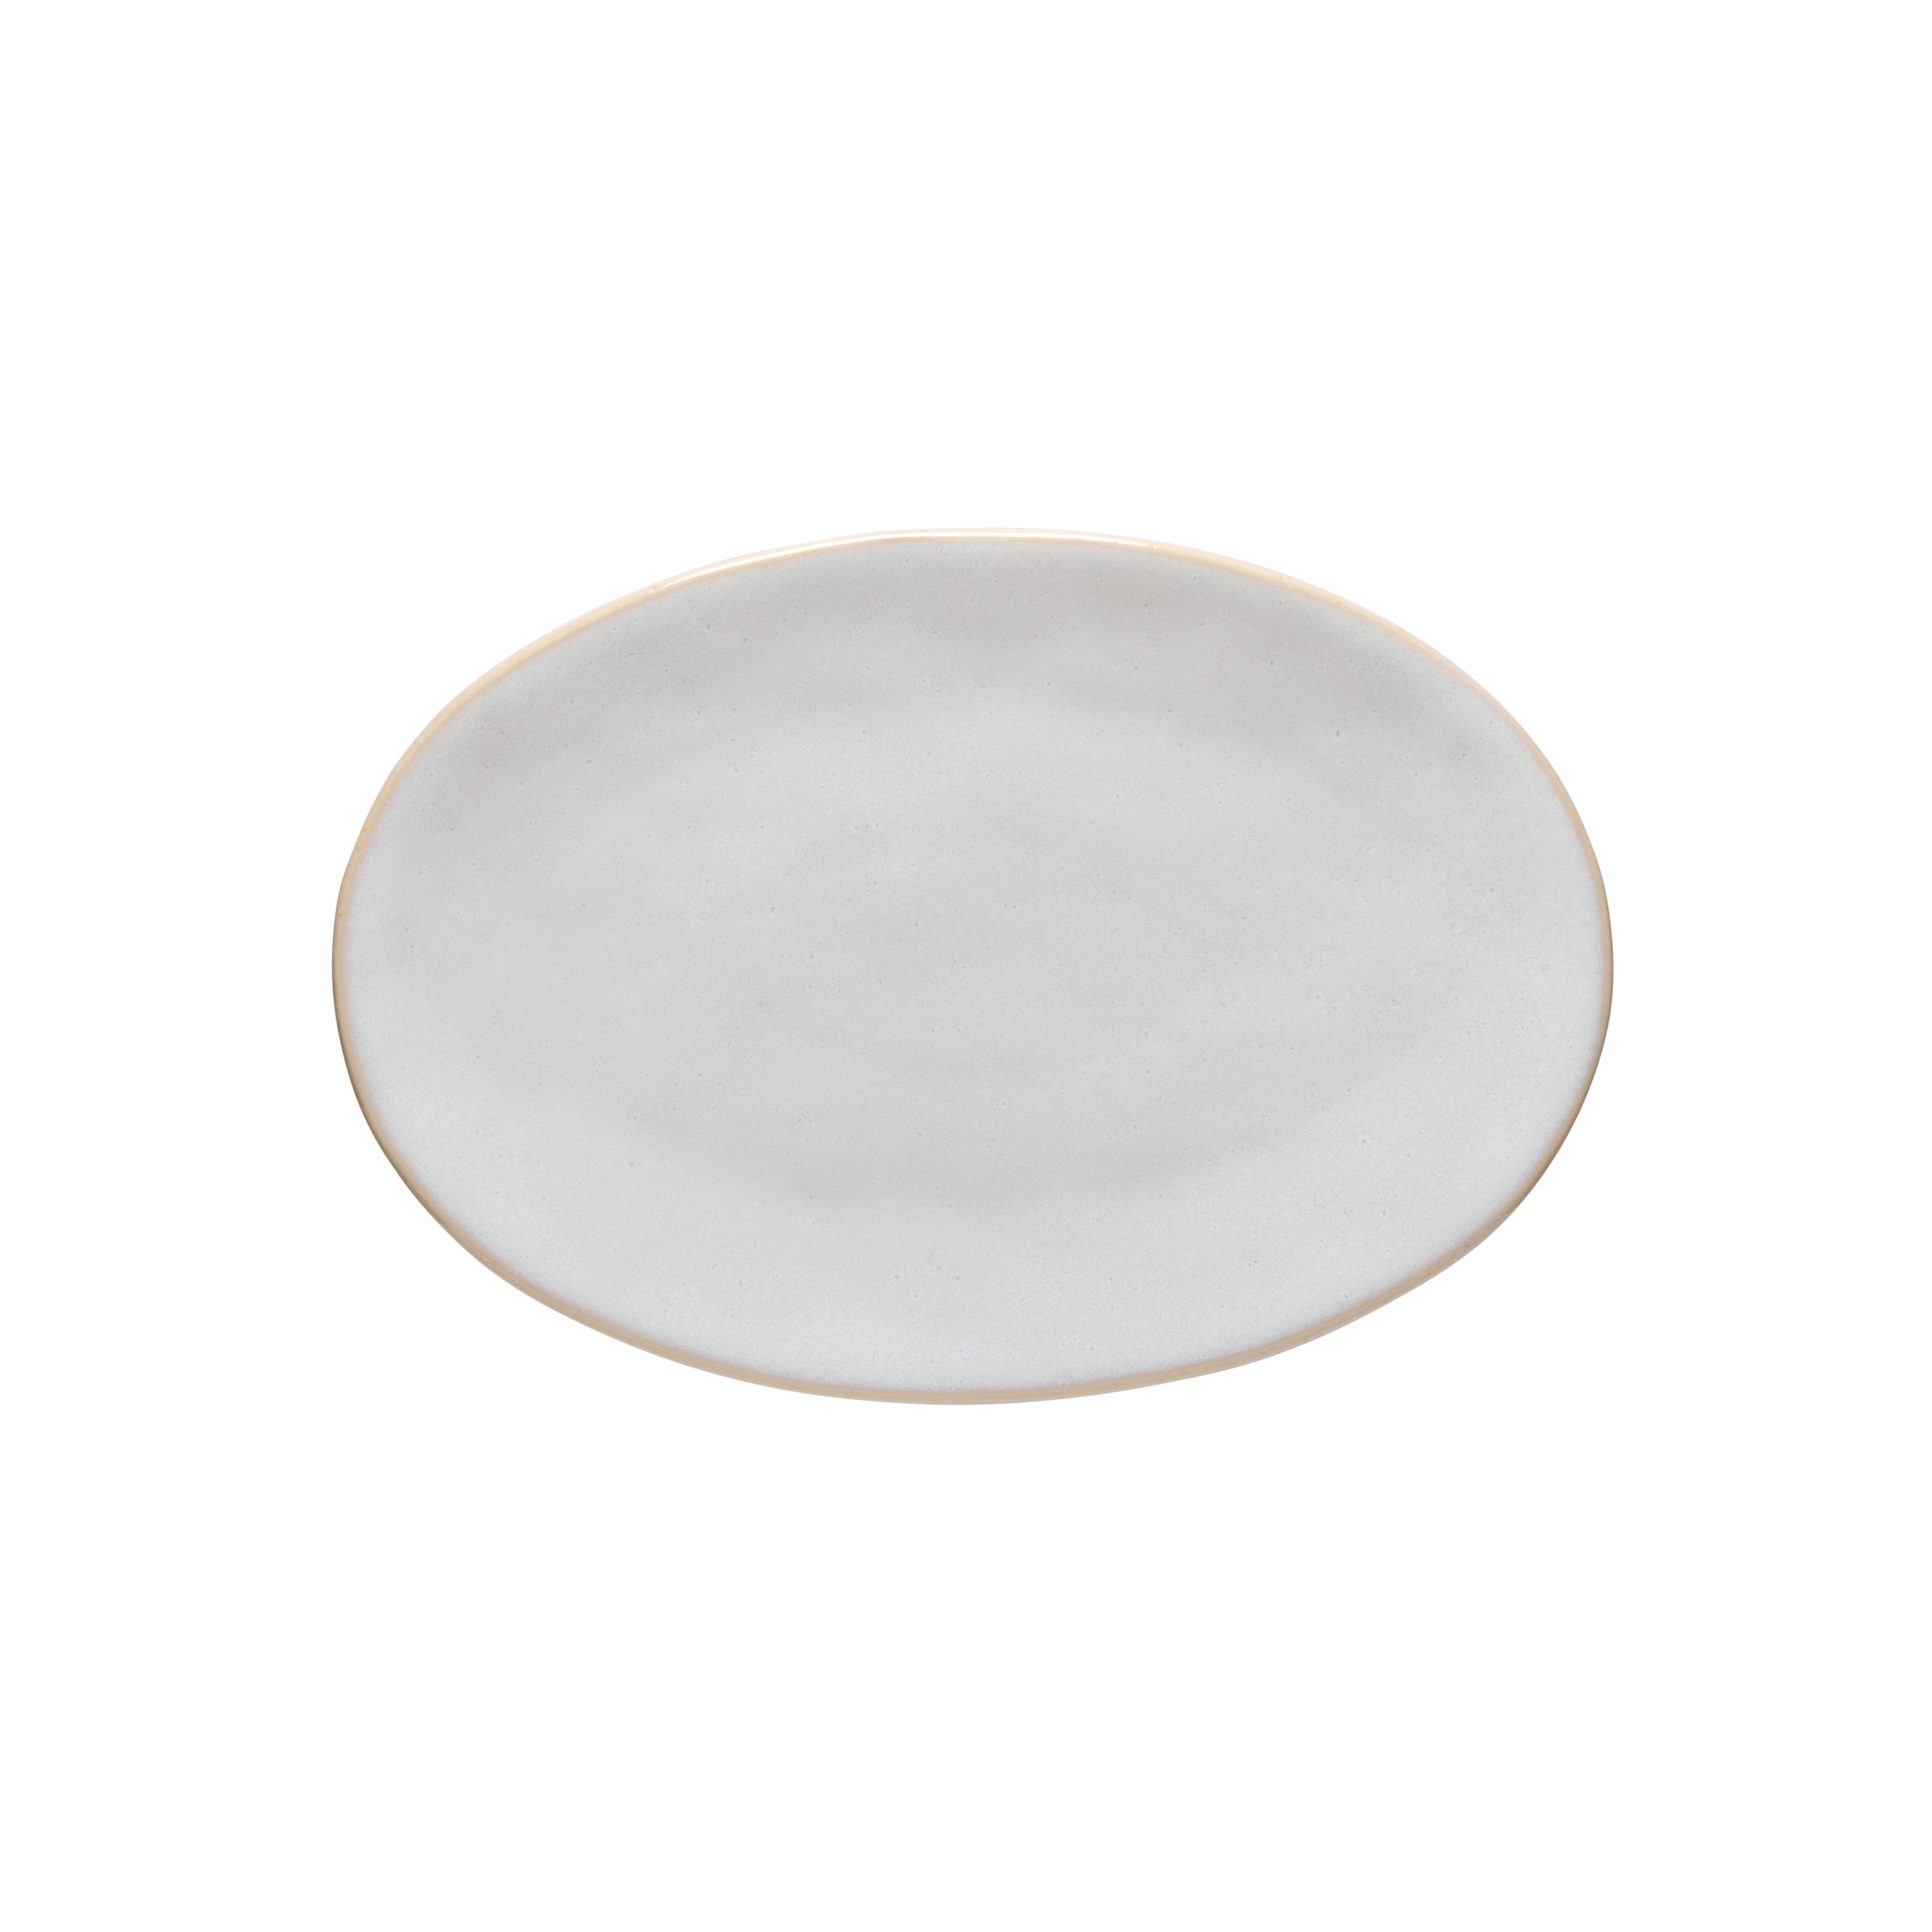 Roda White Oval Platter 27.7cm Gift